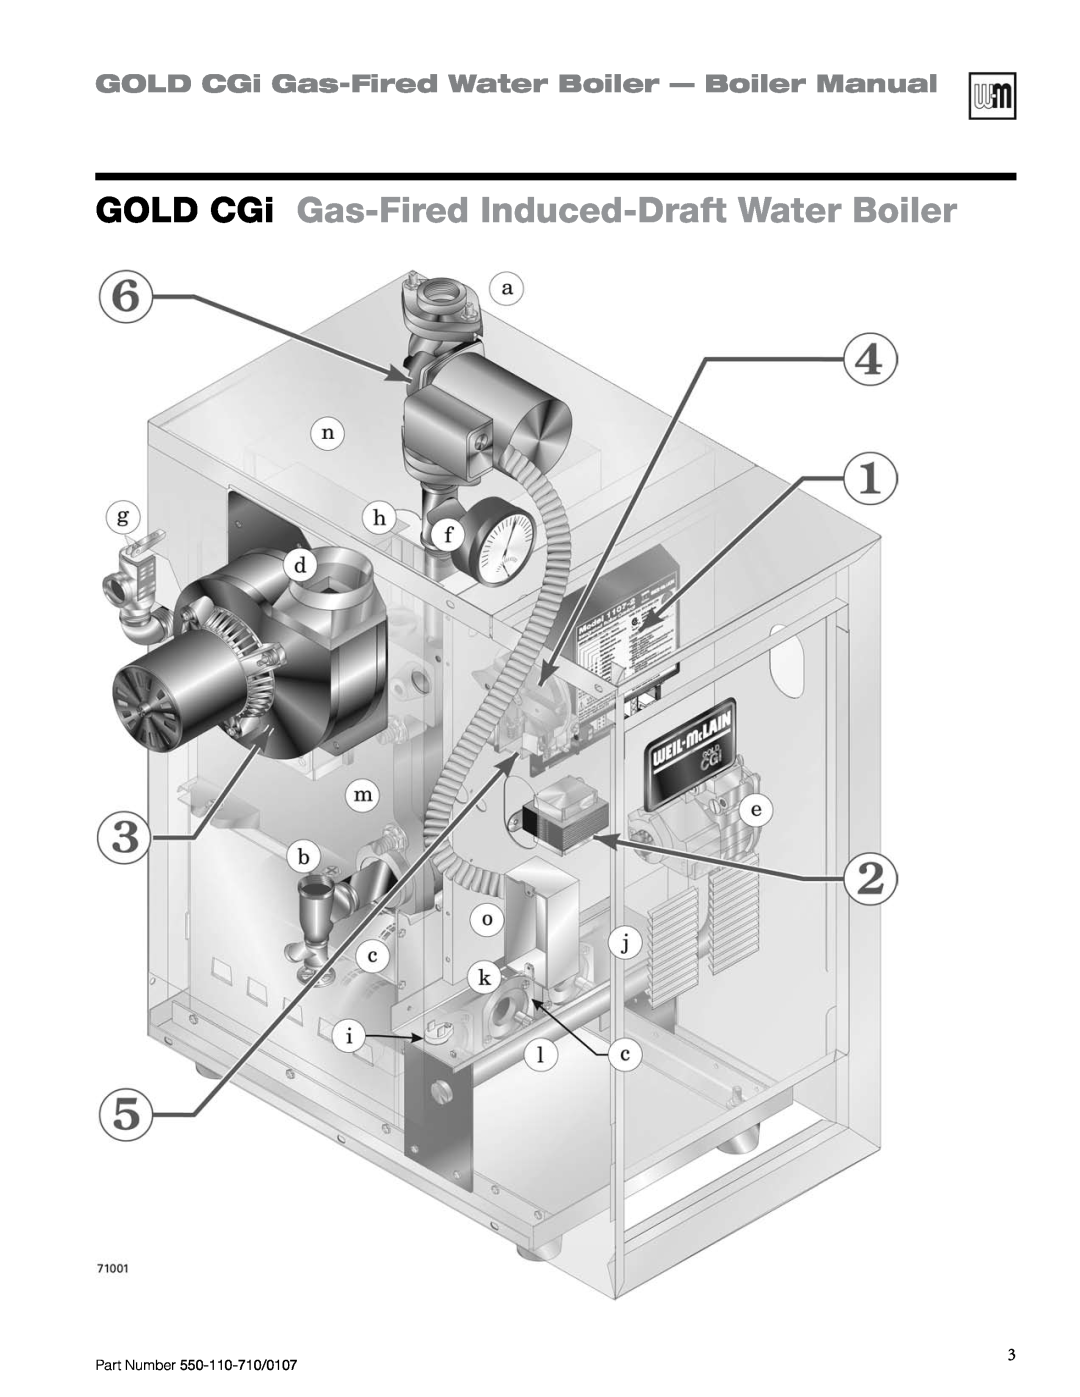 Weil-McLain Series 2 manual GOLD CGi Gas-Fired Induced-DraftWater Boiler, GOLD CGi Gas-FiredWater Boiler — Boiler Manual 